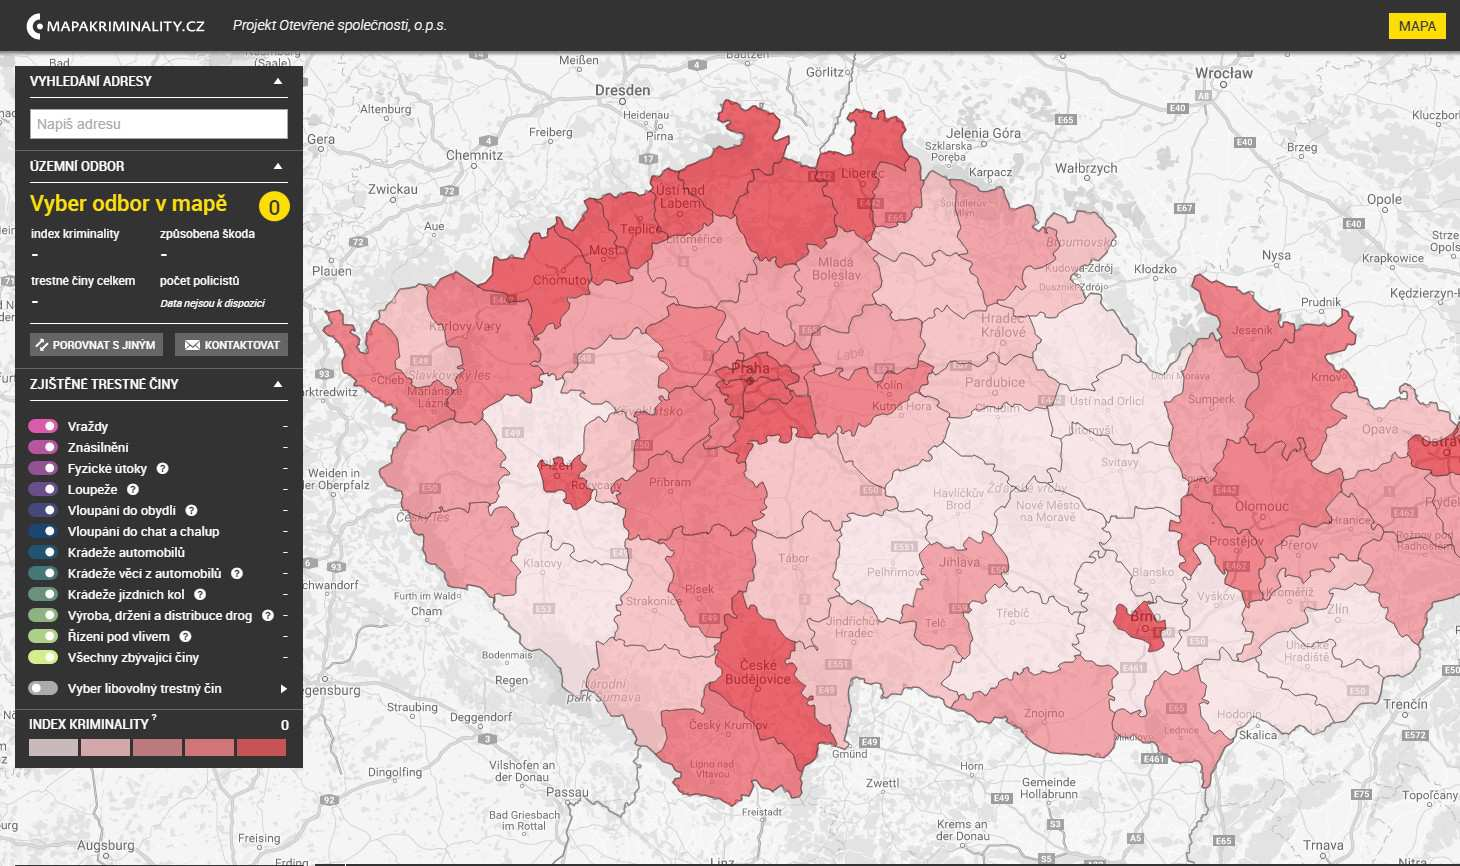 Mapové zobrazení celkové kriminality na úrovni územních odborů ČR zdroj Mapakriminality Celková kriminalita proti předchozímu roku 2015 zaznamenává